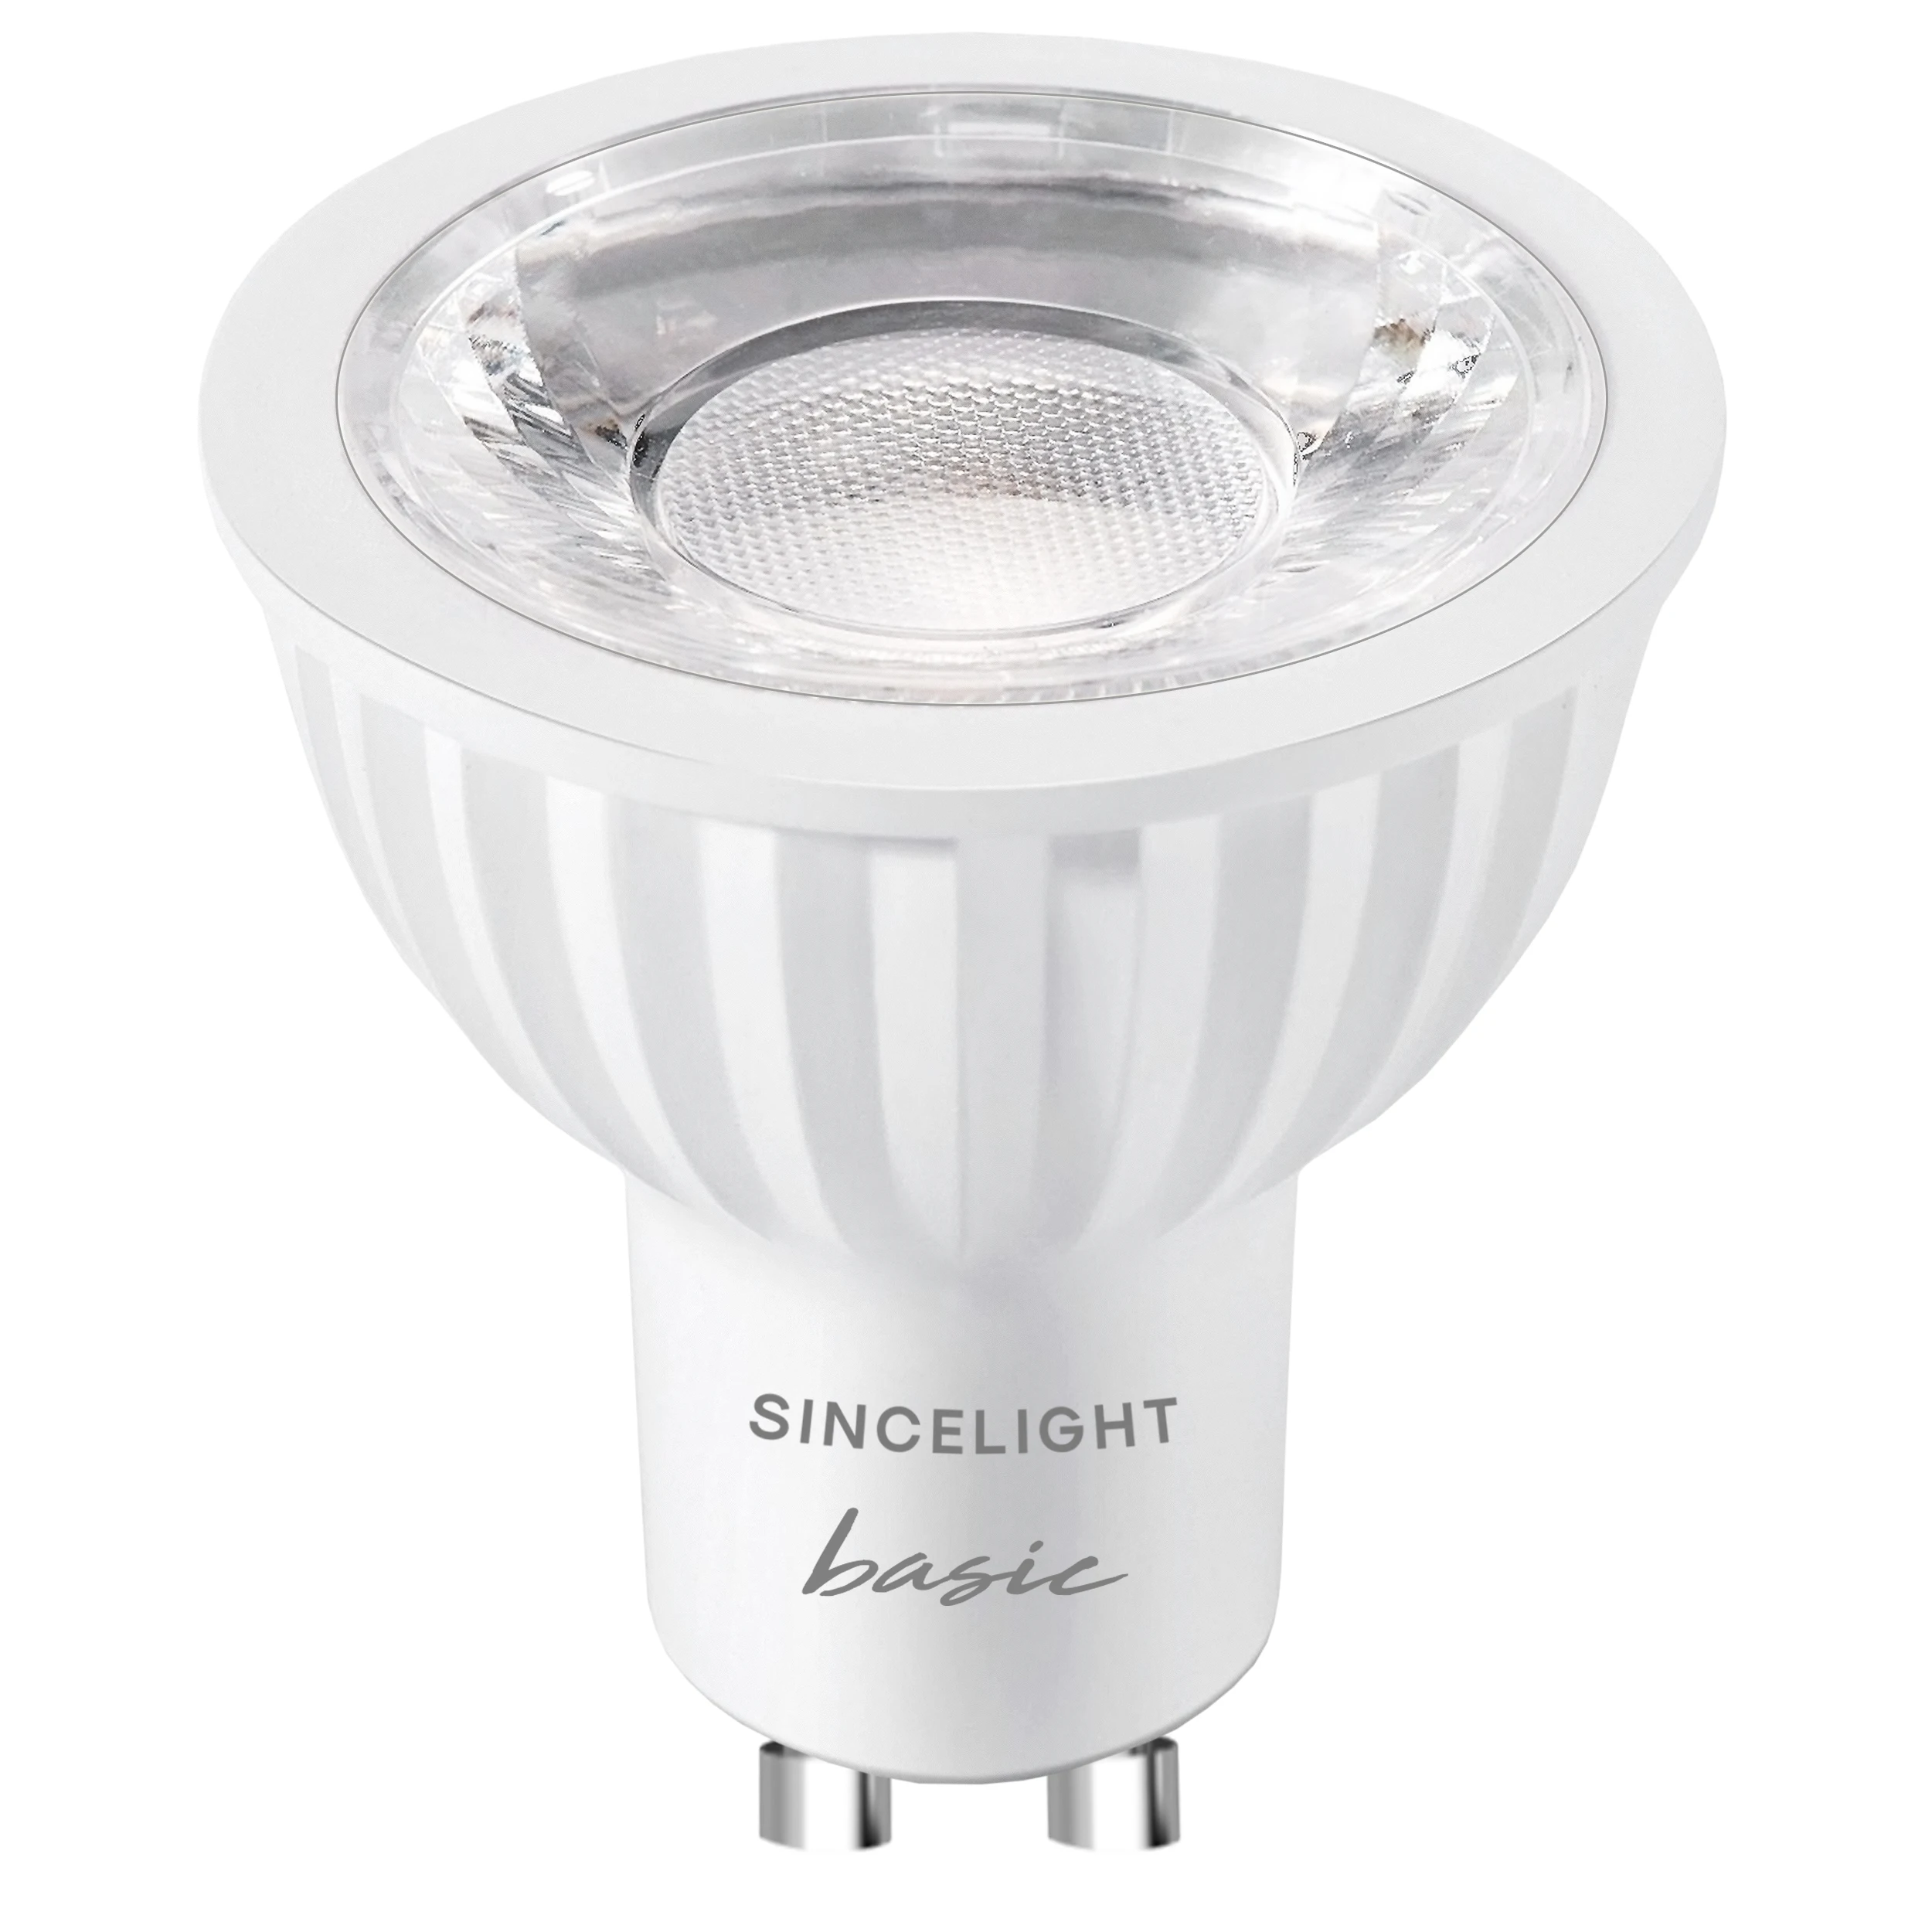 forværres Smøre kontakt Wholesale GU10 LED Bulb 38D Beam 6W Light Reflector PAR16, 2700K,4000K,6000K,  High Color Rending RA, 100-240V, From m.alibaba.com